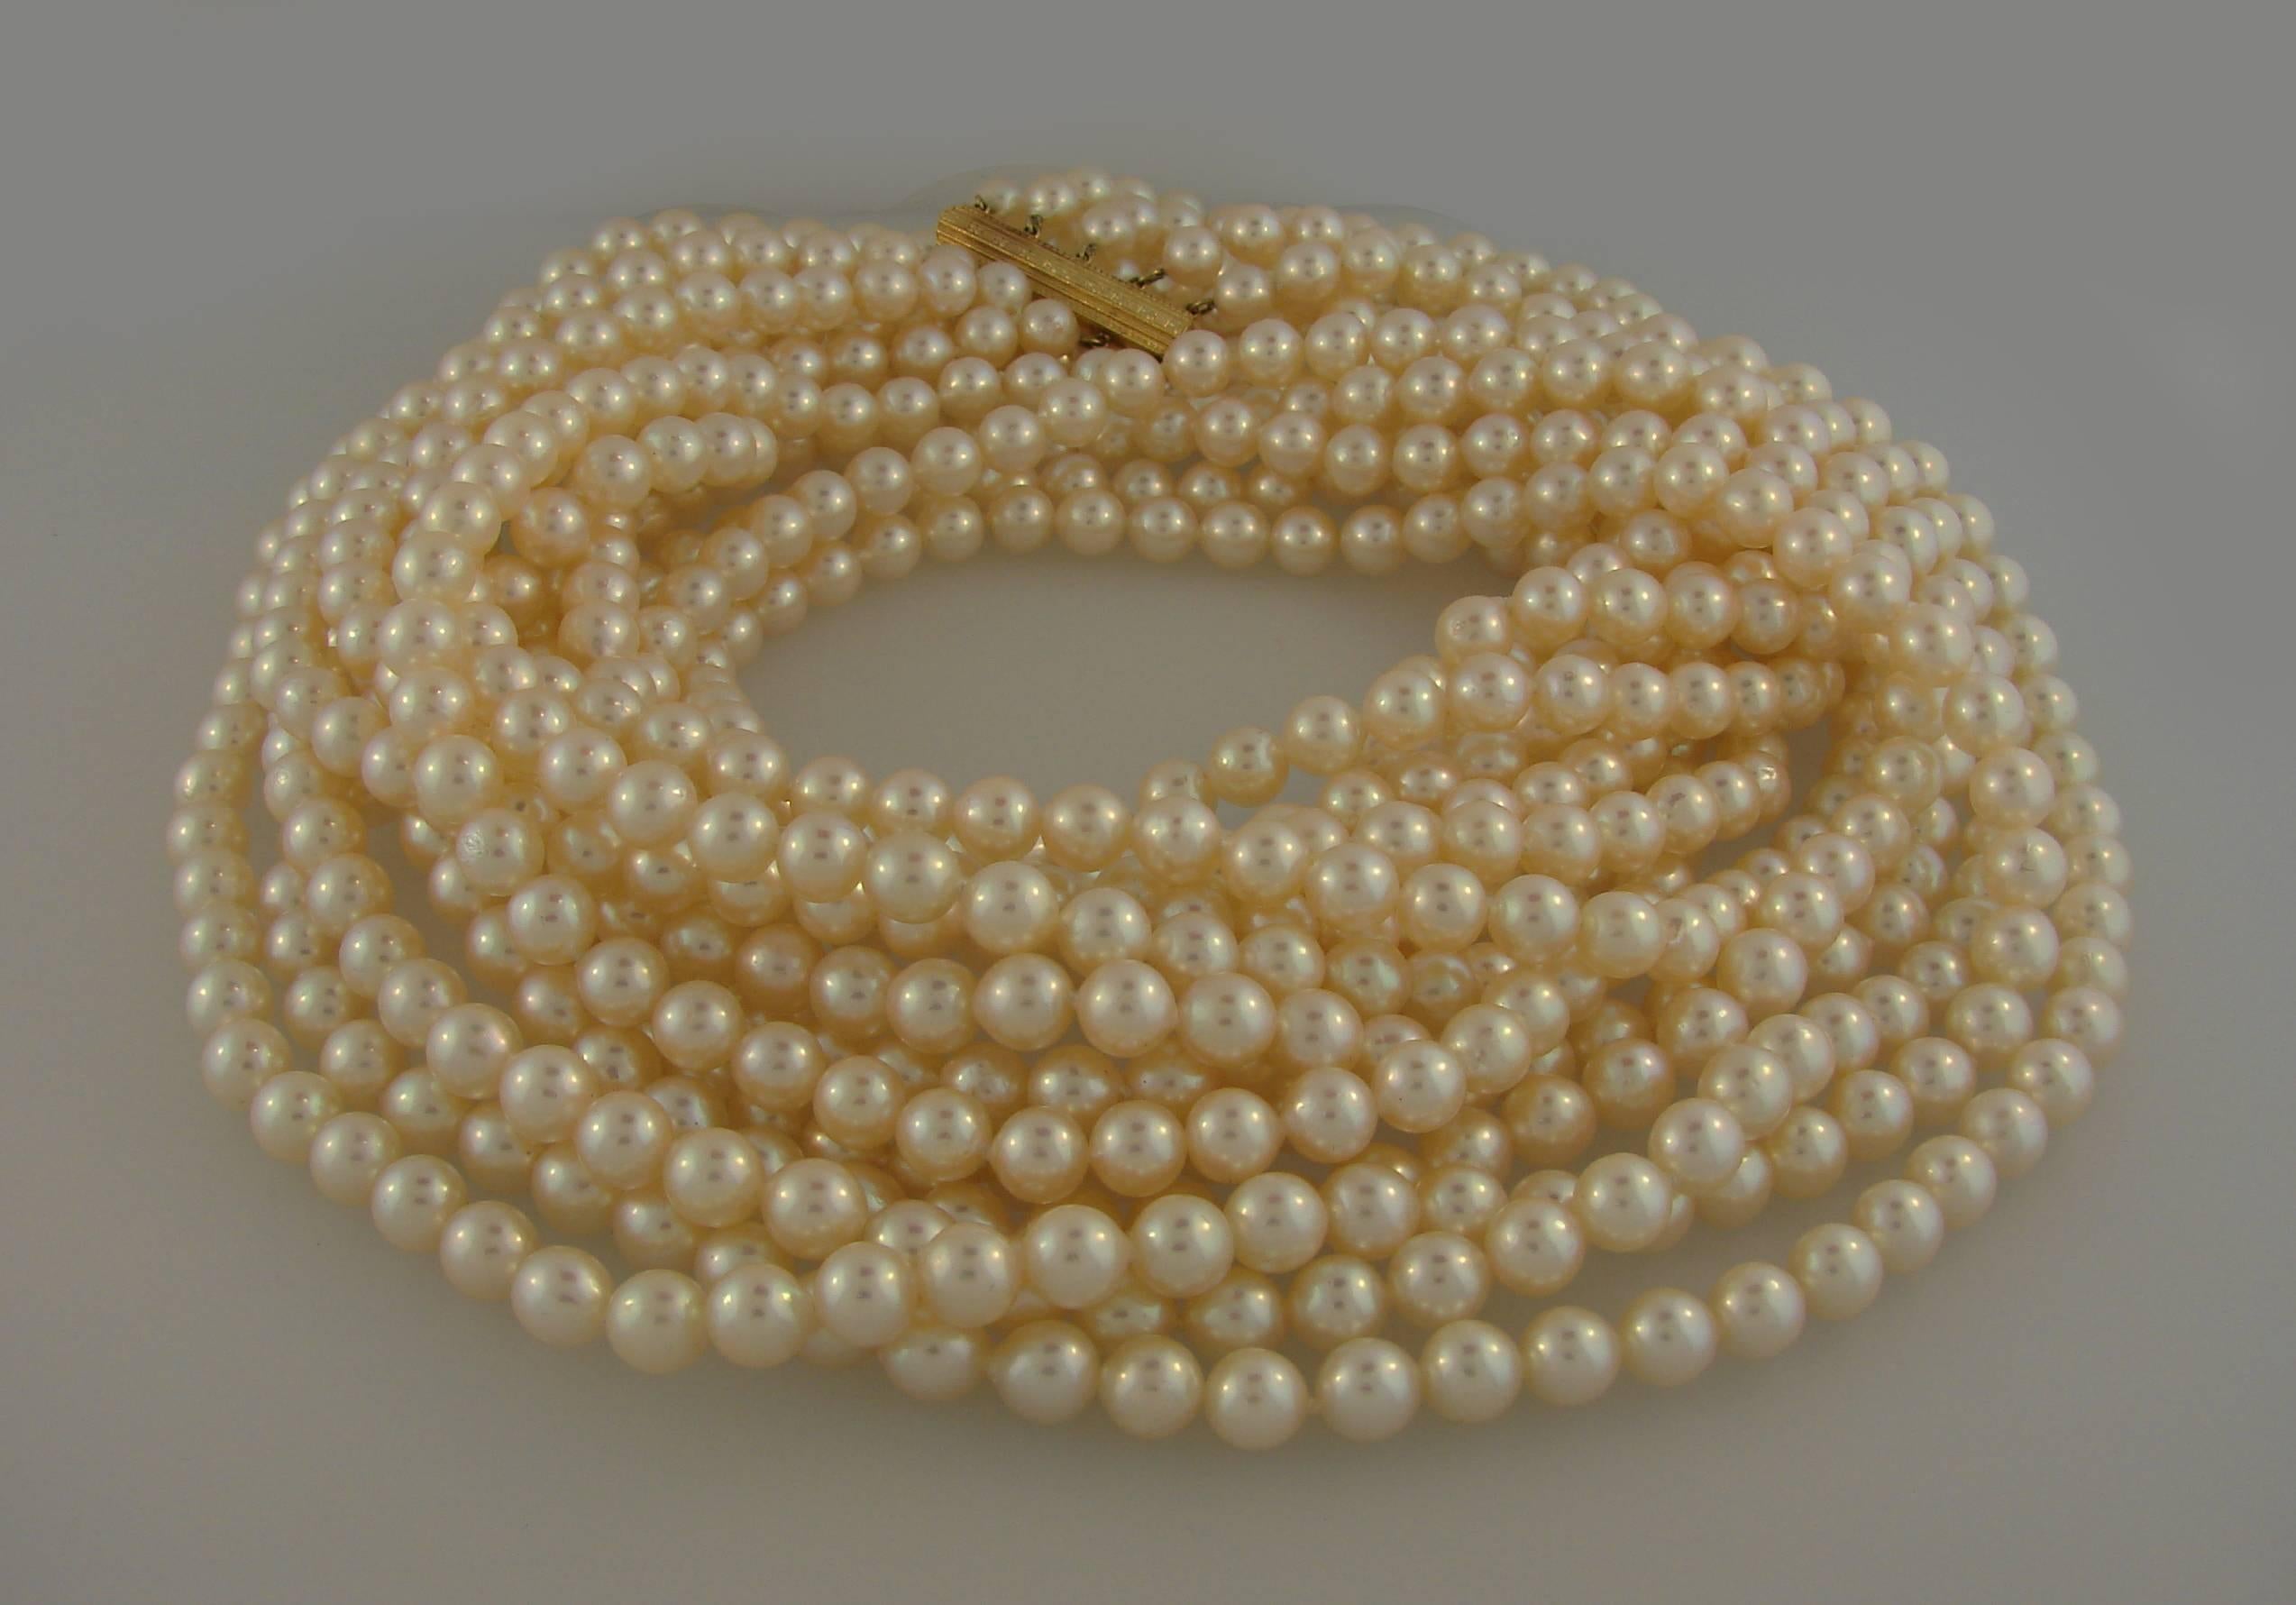 mikimoto strand pearl necklace